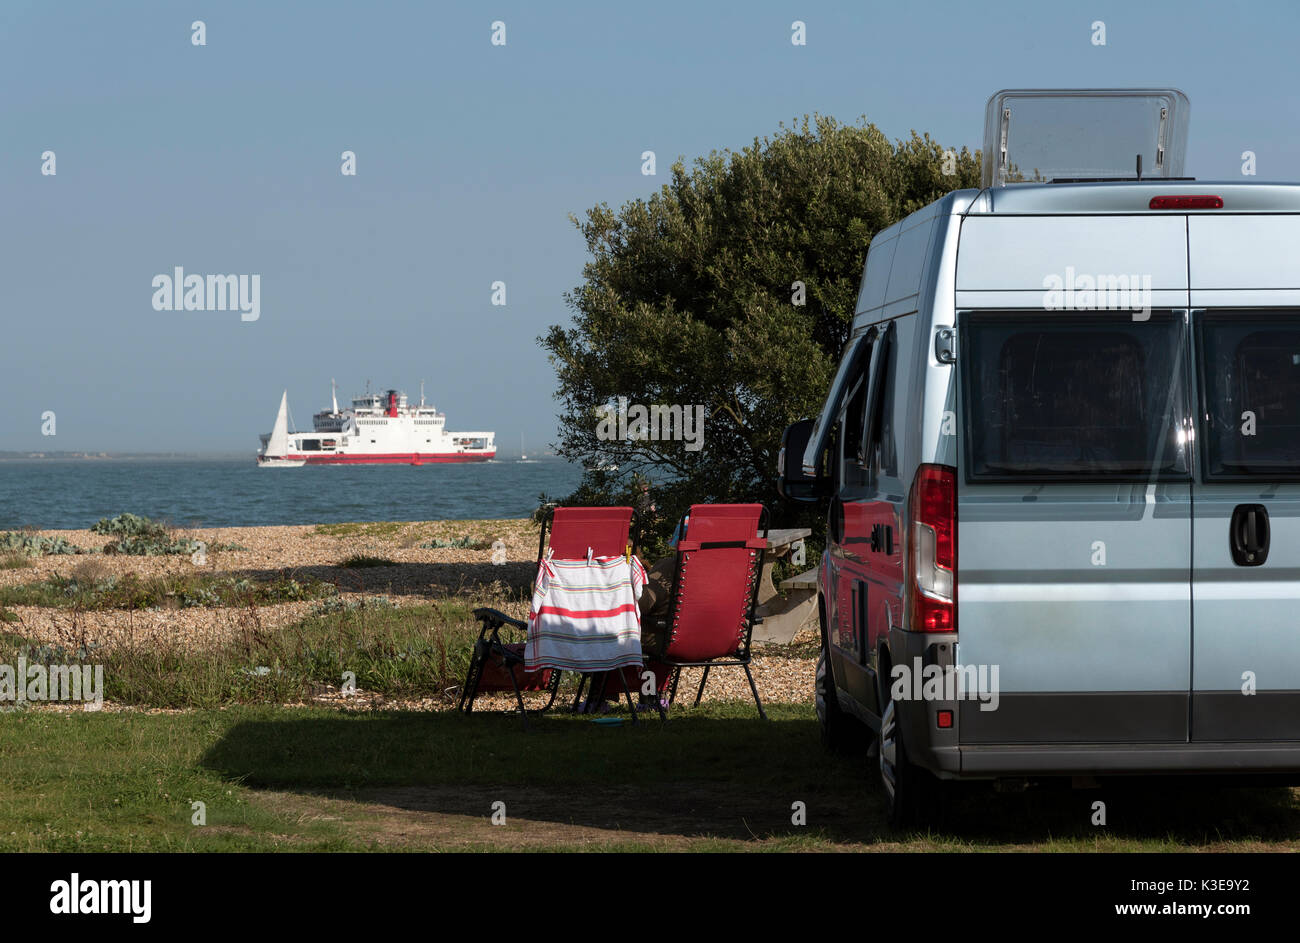 Camping junto al mar en el sur de Inglaterra. De agosto de 2017. Camperhome en una playa de guijarros con una vista de un buque Ro-Ro y el mar Foto de stock